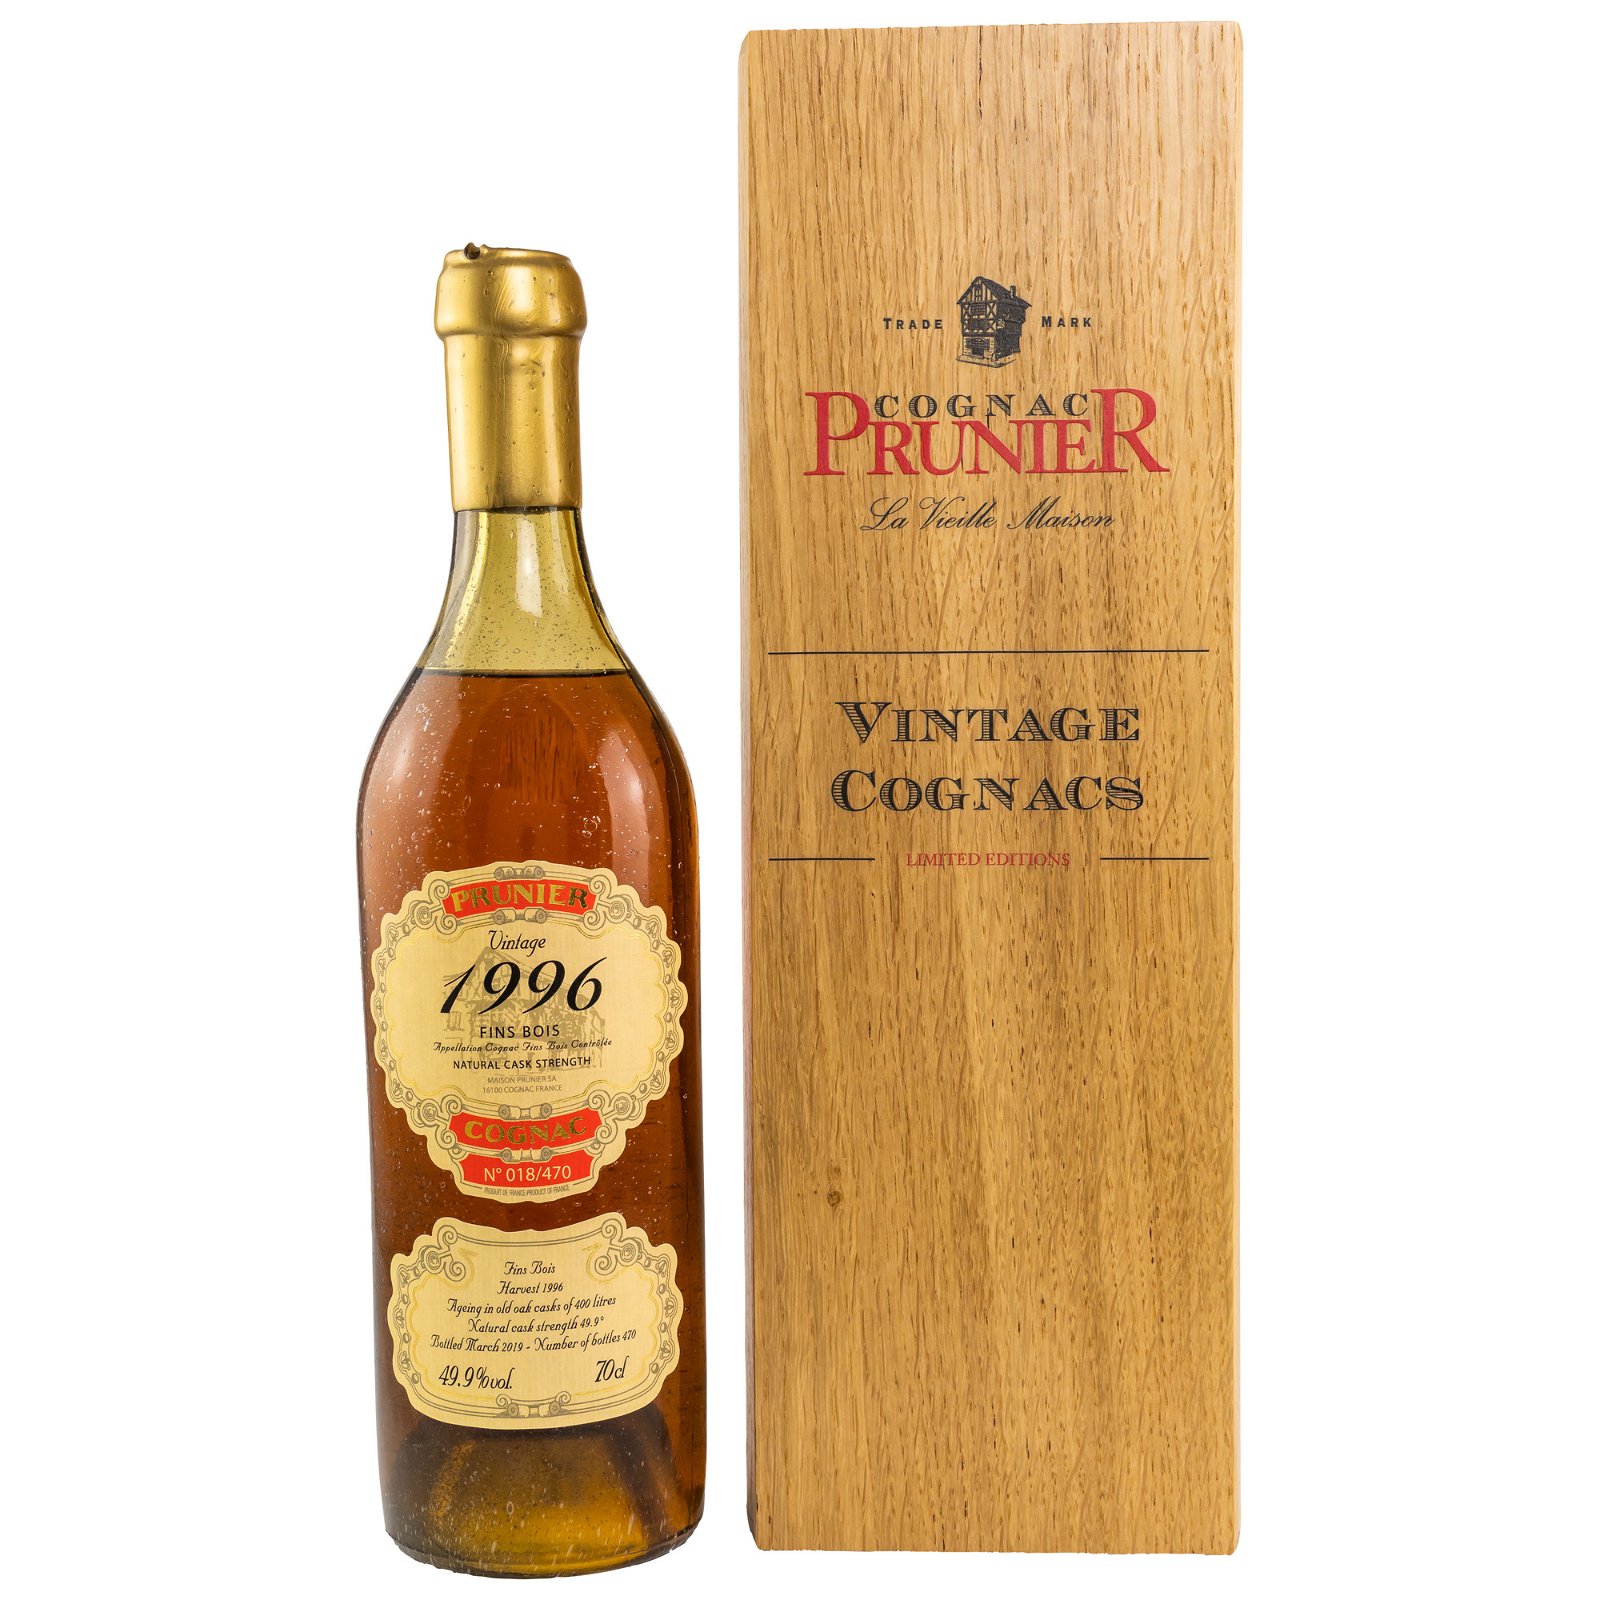 Prunier 1996/2019 Fins Bois Cognac (Vintage Cognacs)